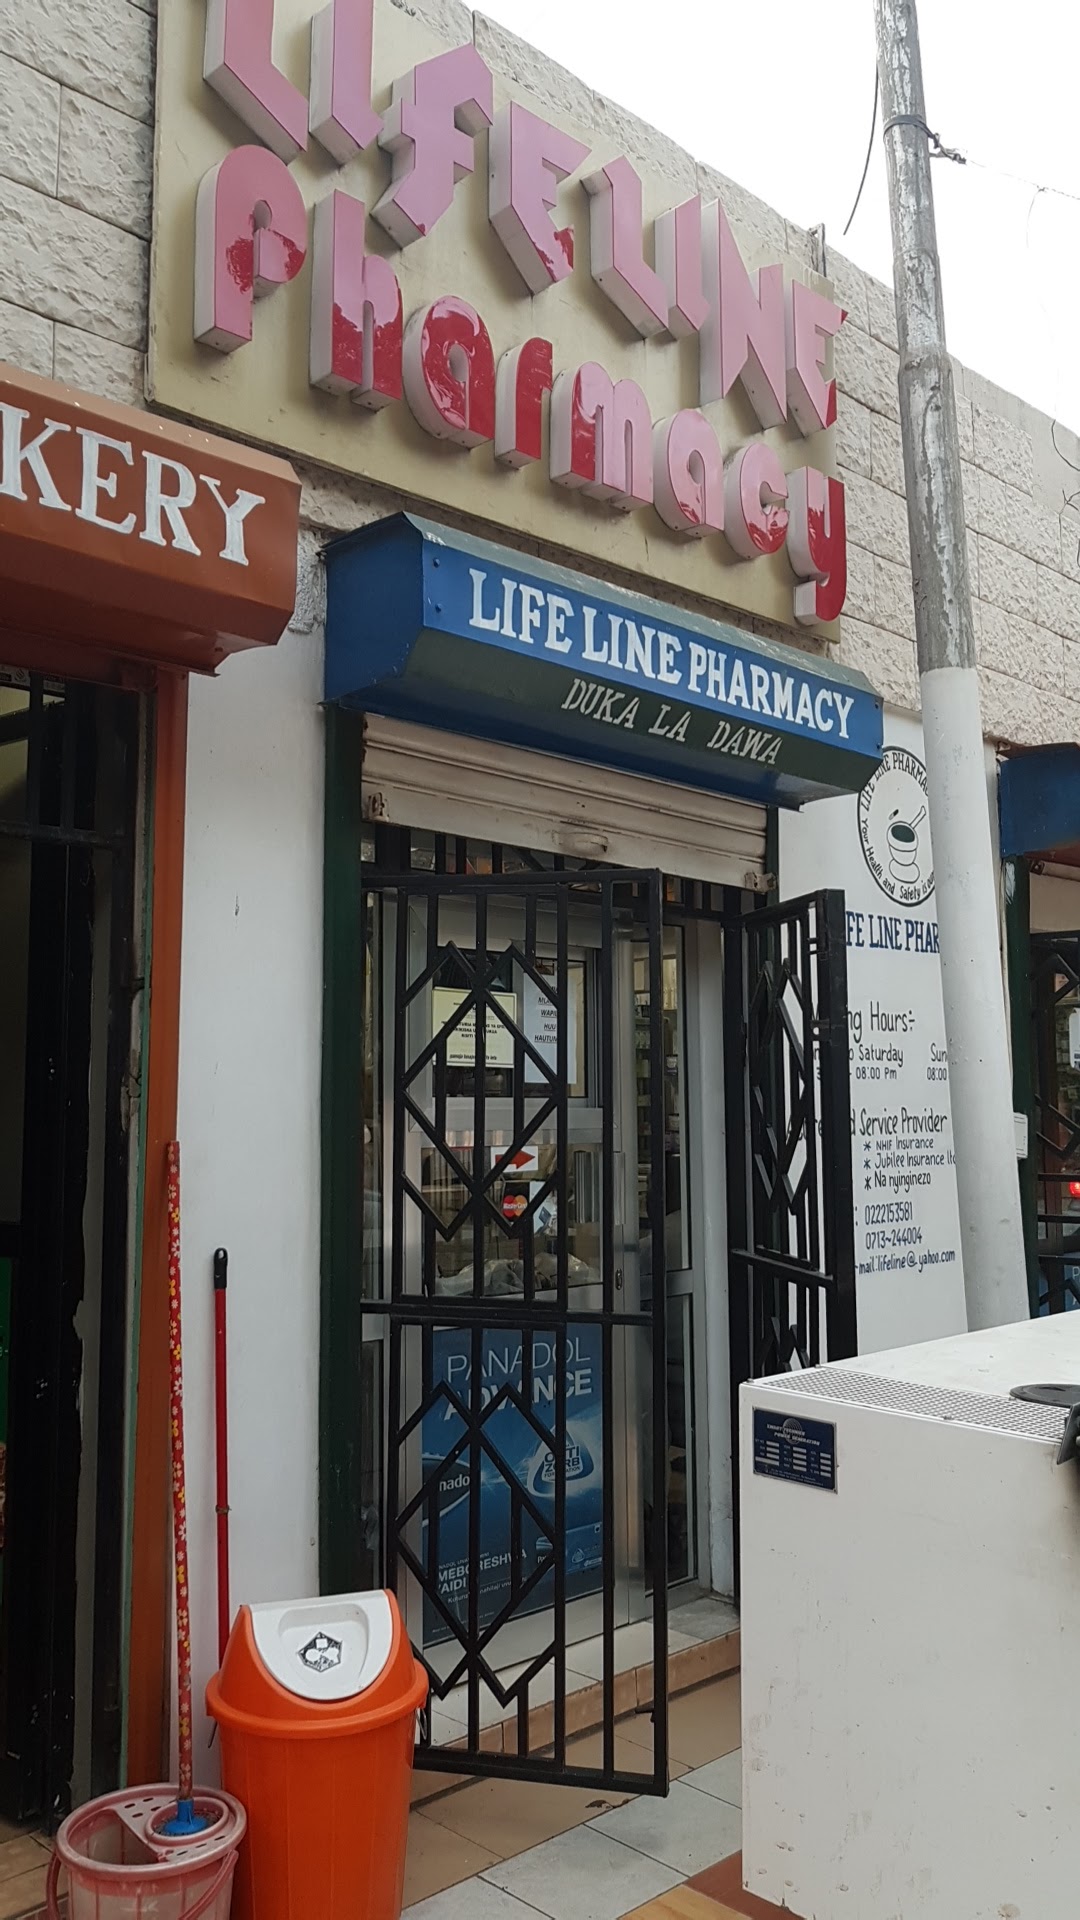 Life Line Pharmacy